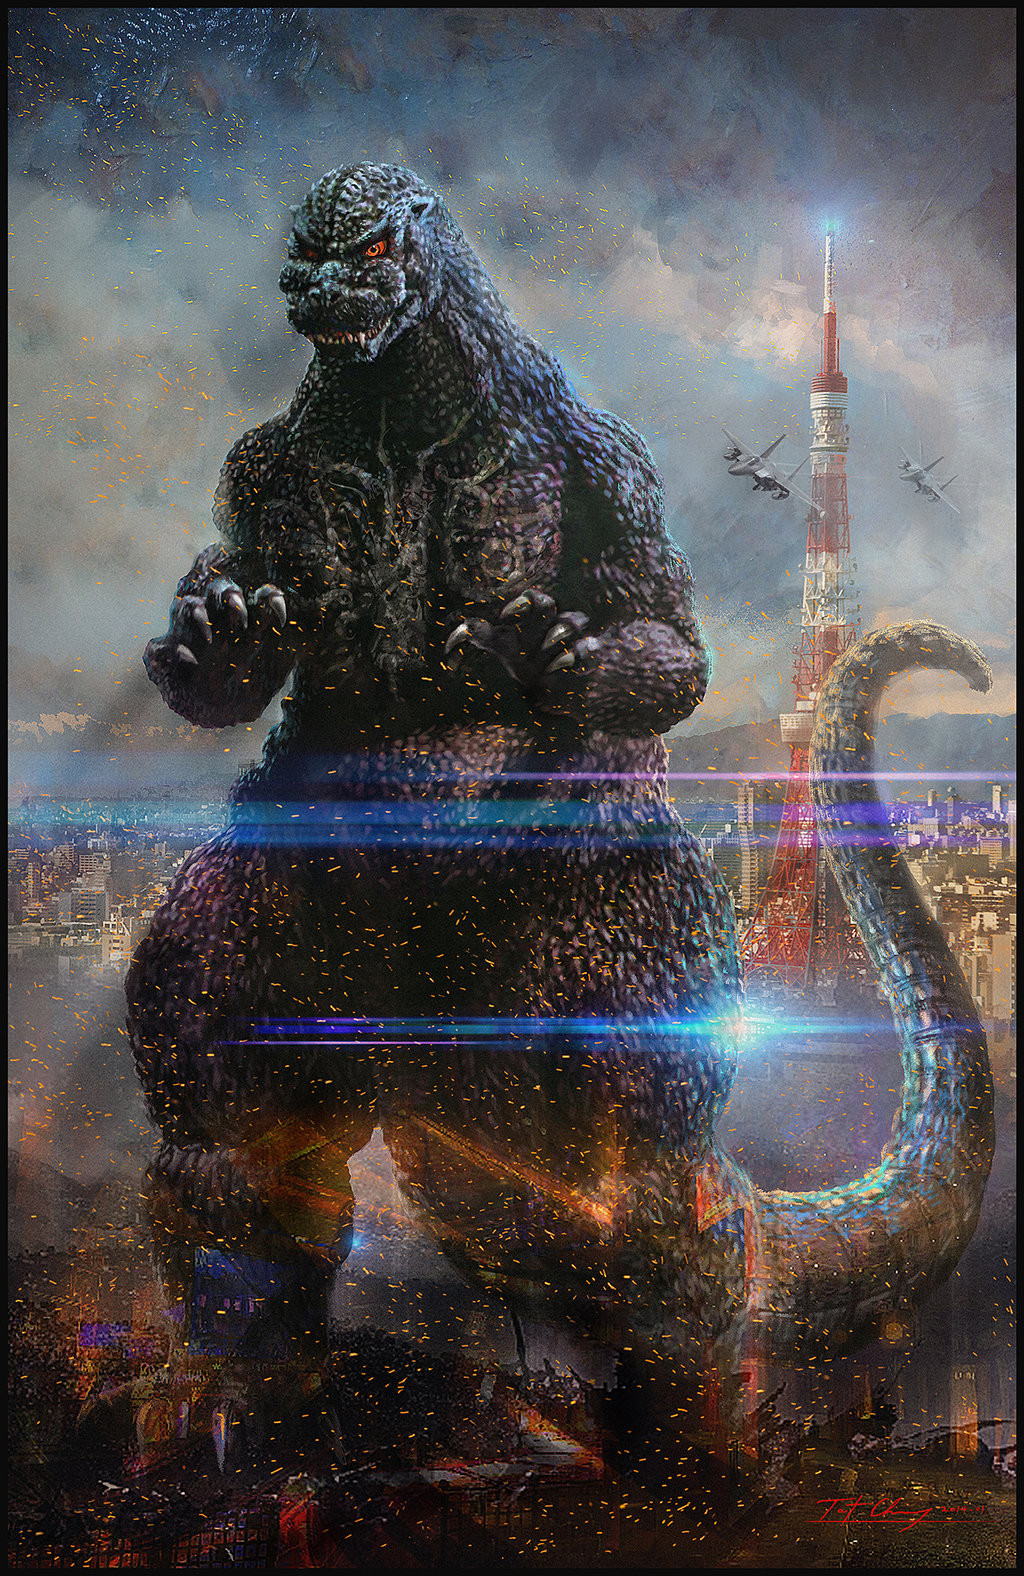 Godzilla 1994 - By Cheung Chung Tat